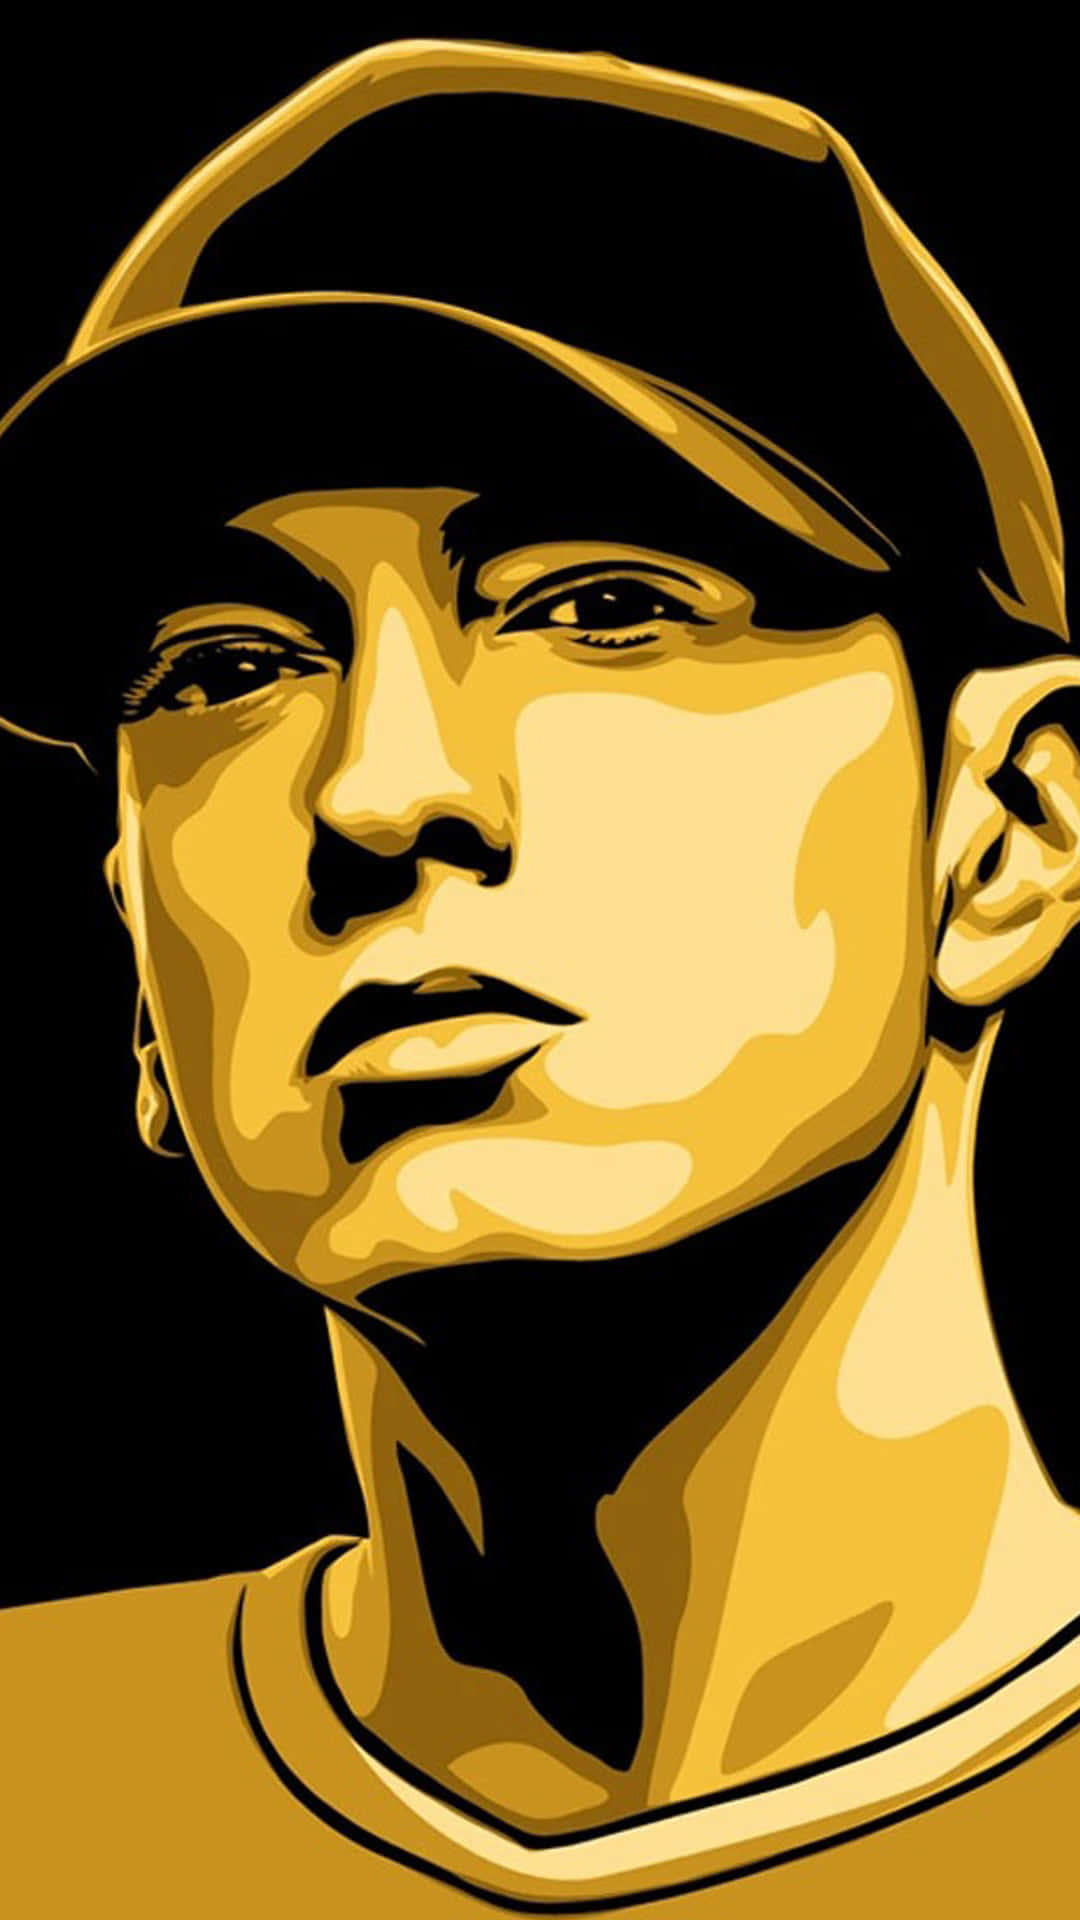 Eminem in a Spellbinding Performance